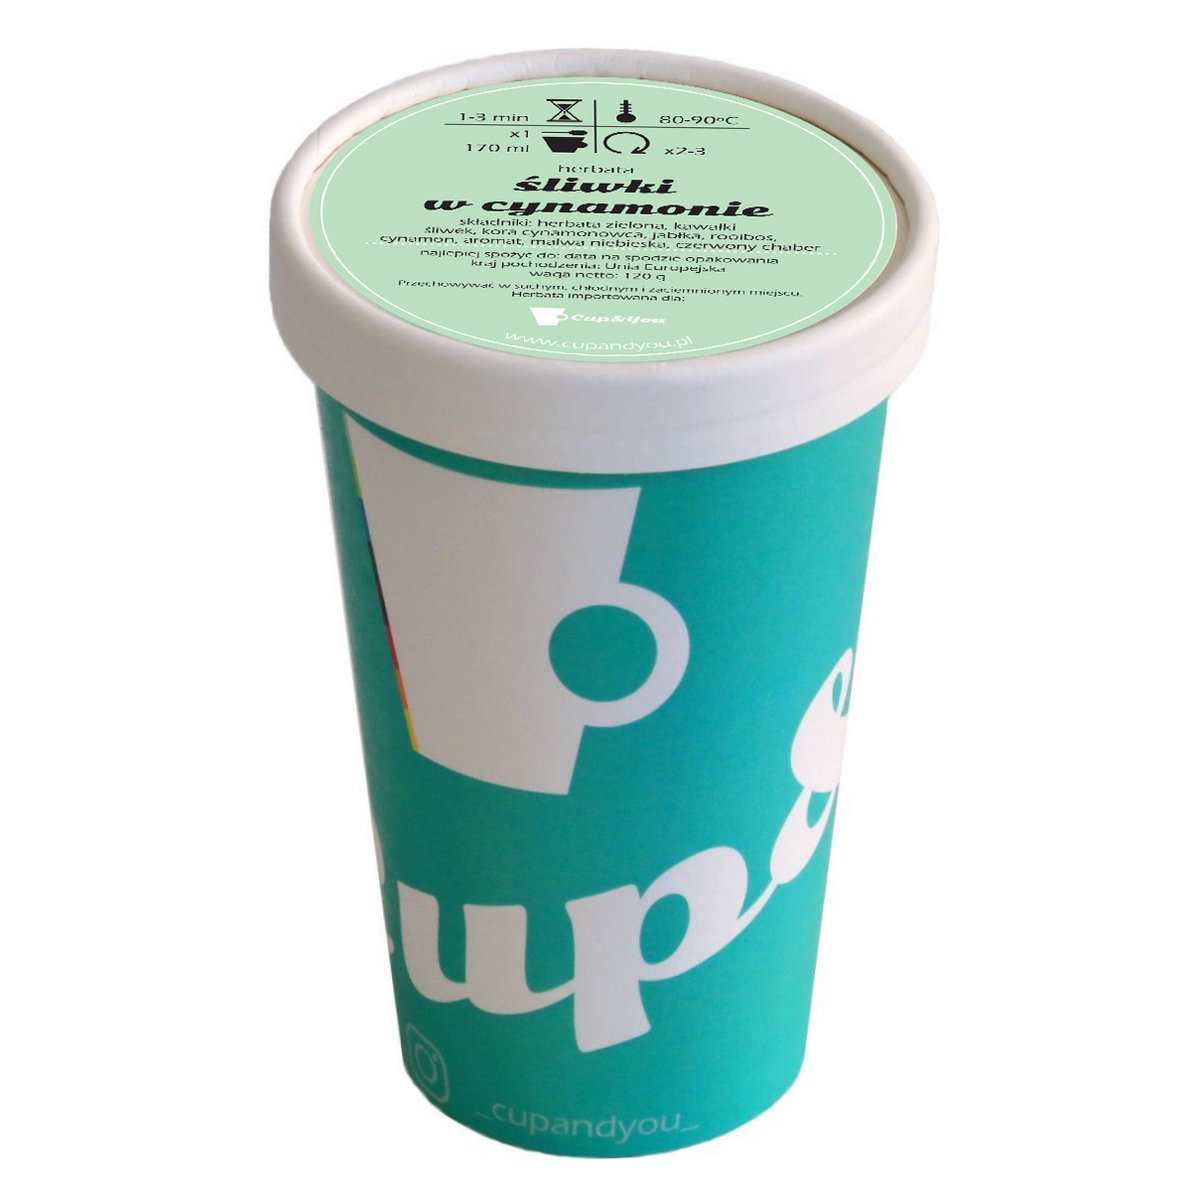 Herbata zielona smakowa CUP&YOU, śliwki w cynamonie w EKO KUBKU, 120 g